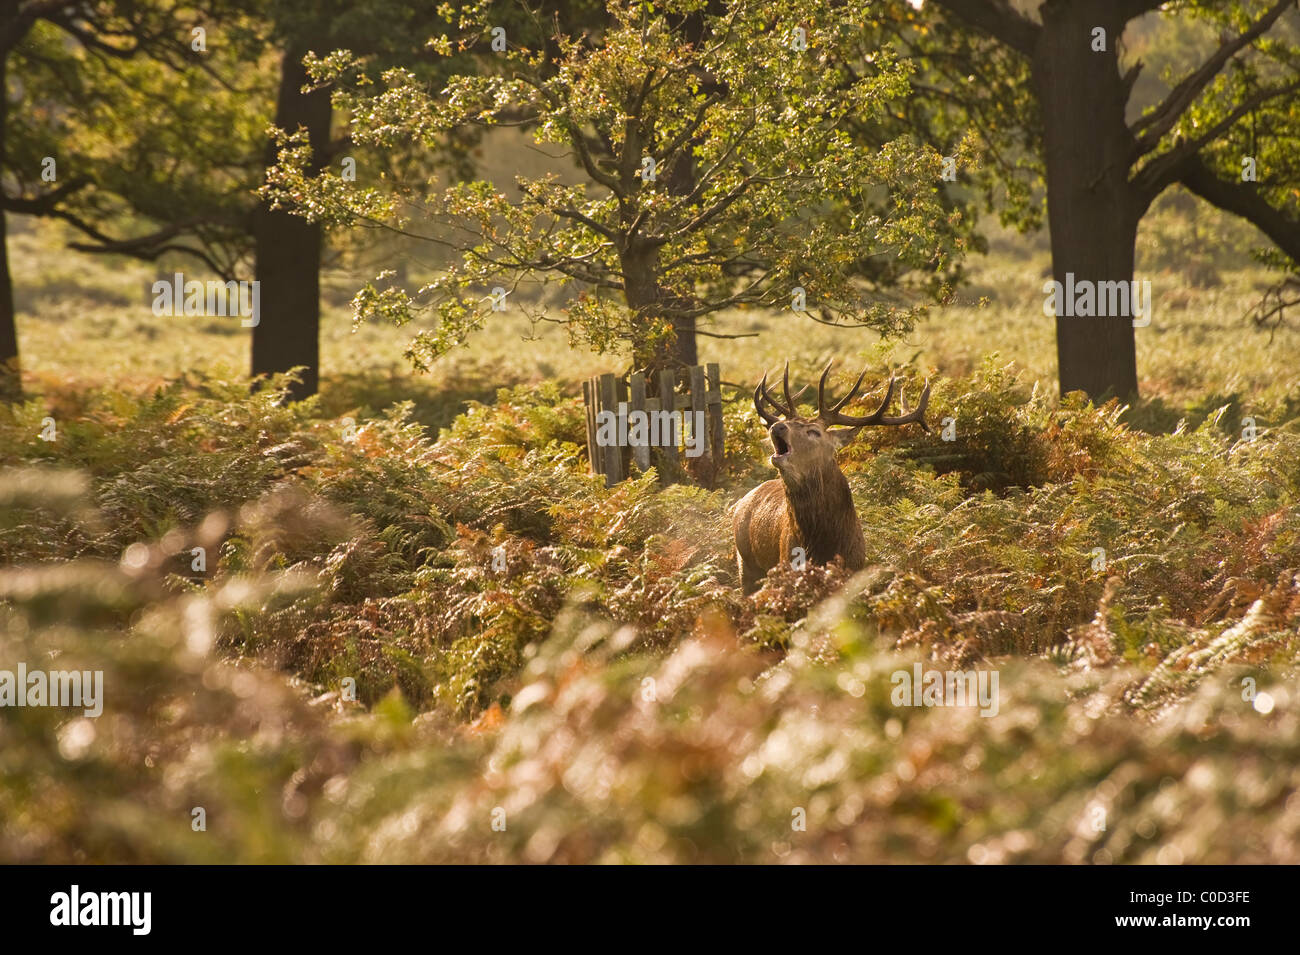 Rotwild, Hirsch, Harem in Richmond Park London Enlgand Landschaft im Herbst Herbst Stockfoto